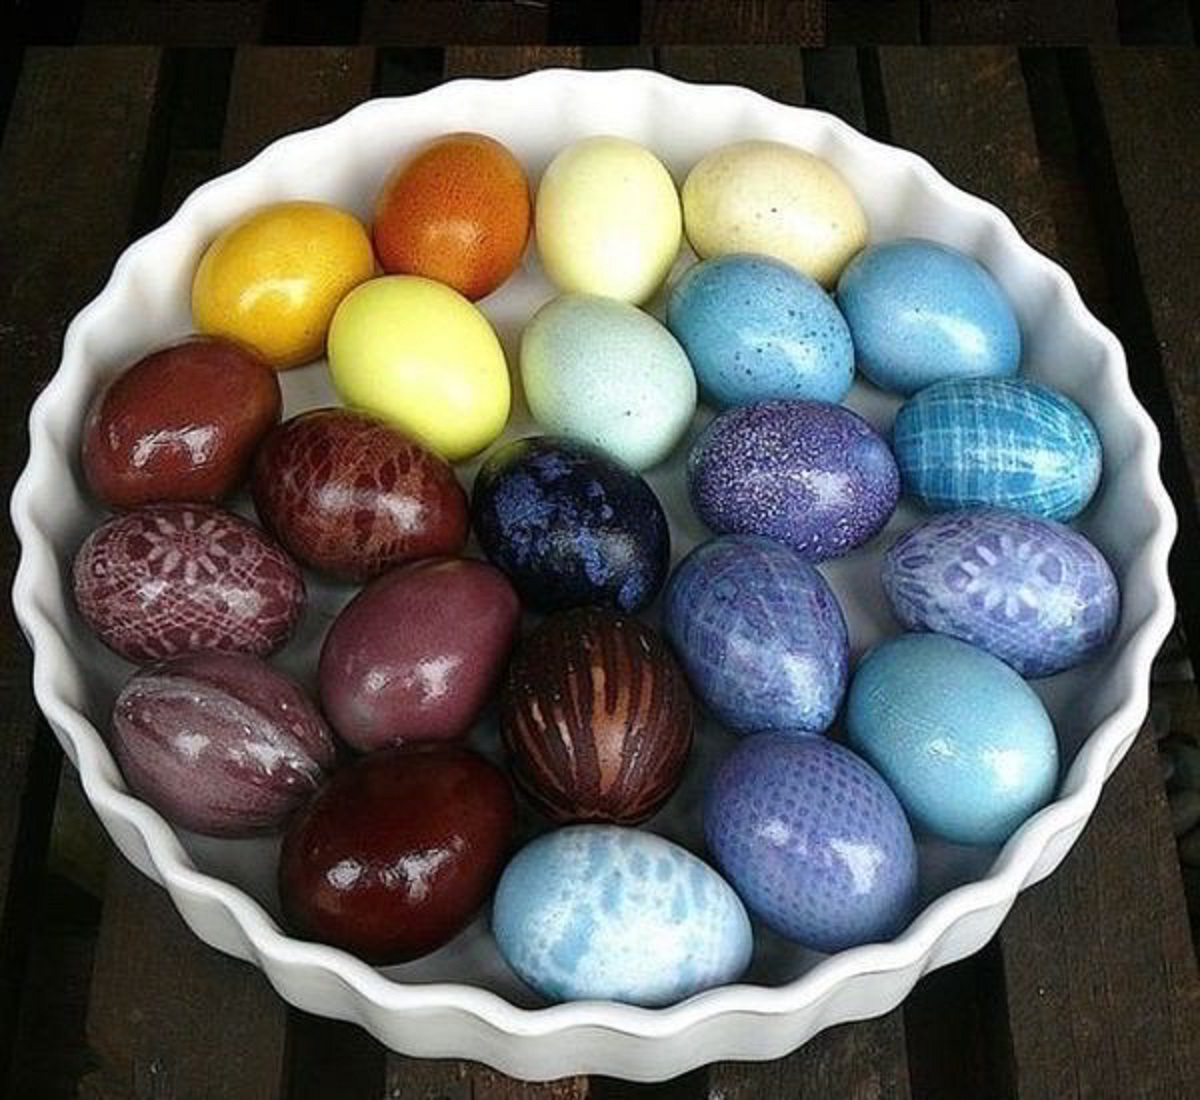 Как красить яйца пищевым красителем. Натуральные красители для яиц. Красим яйца. Окрашивание яиц. Натуральныек расители для Яци.